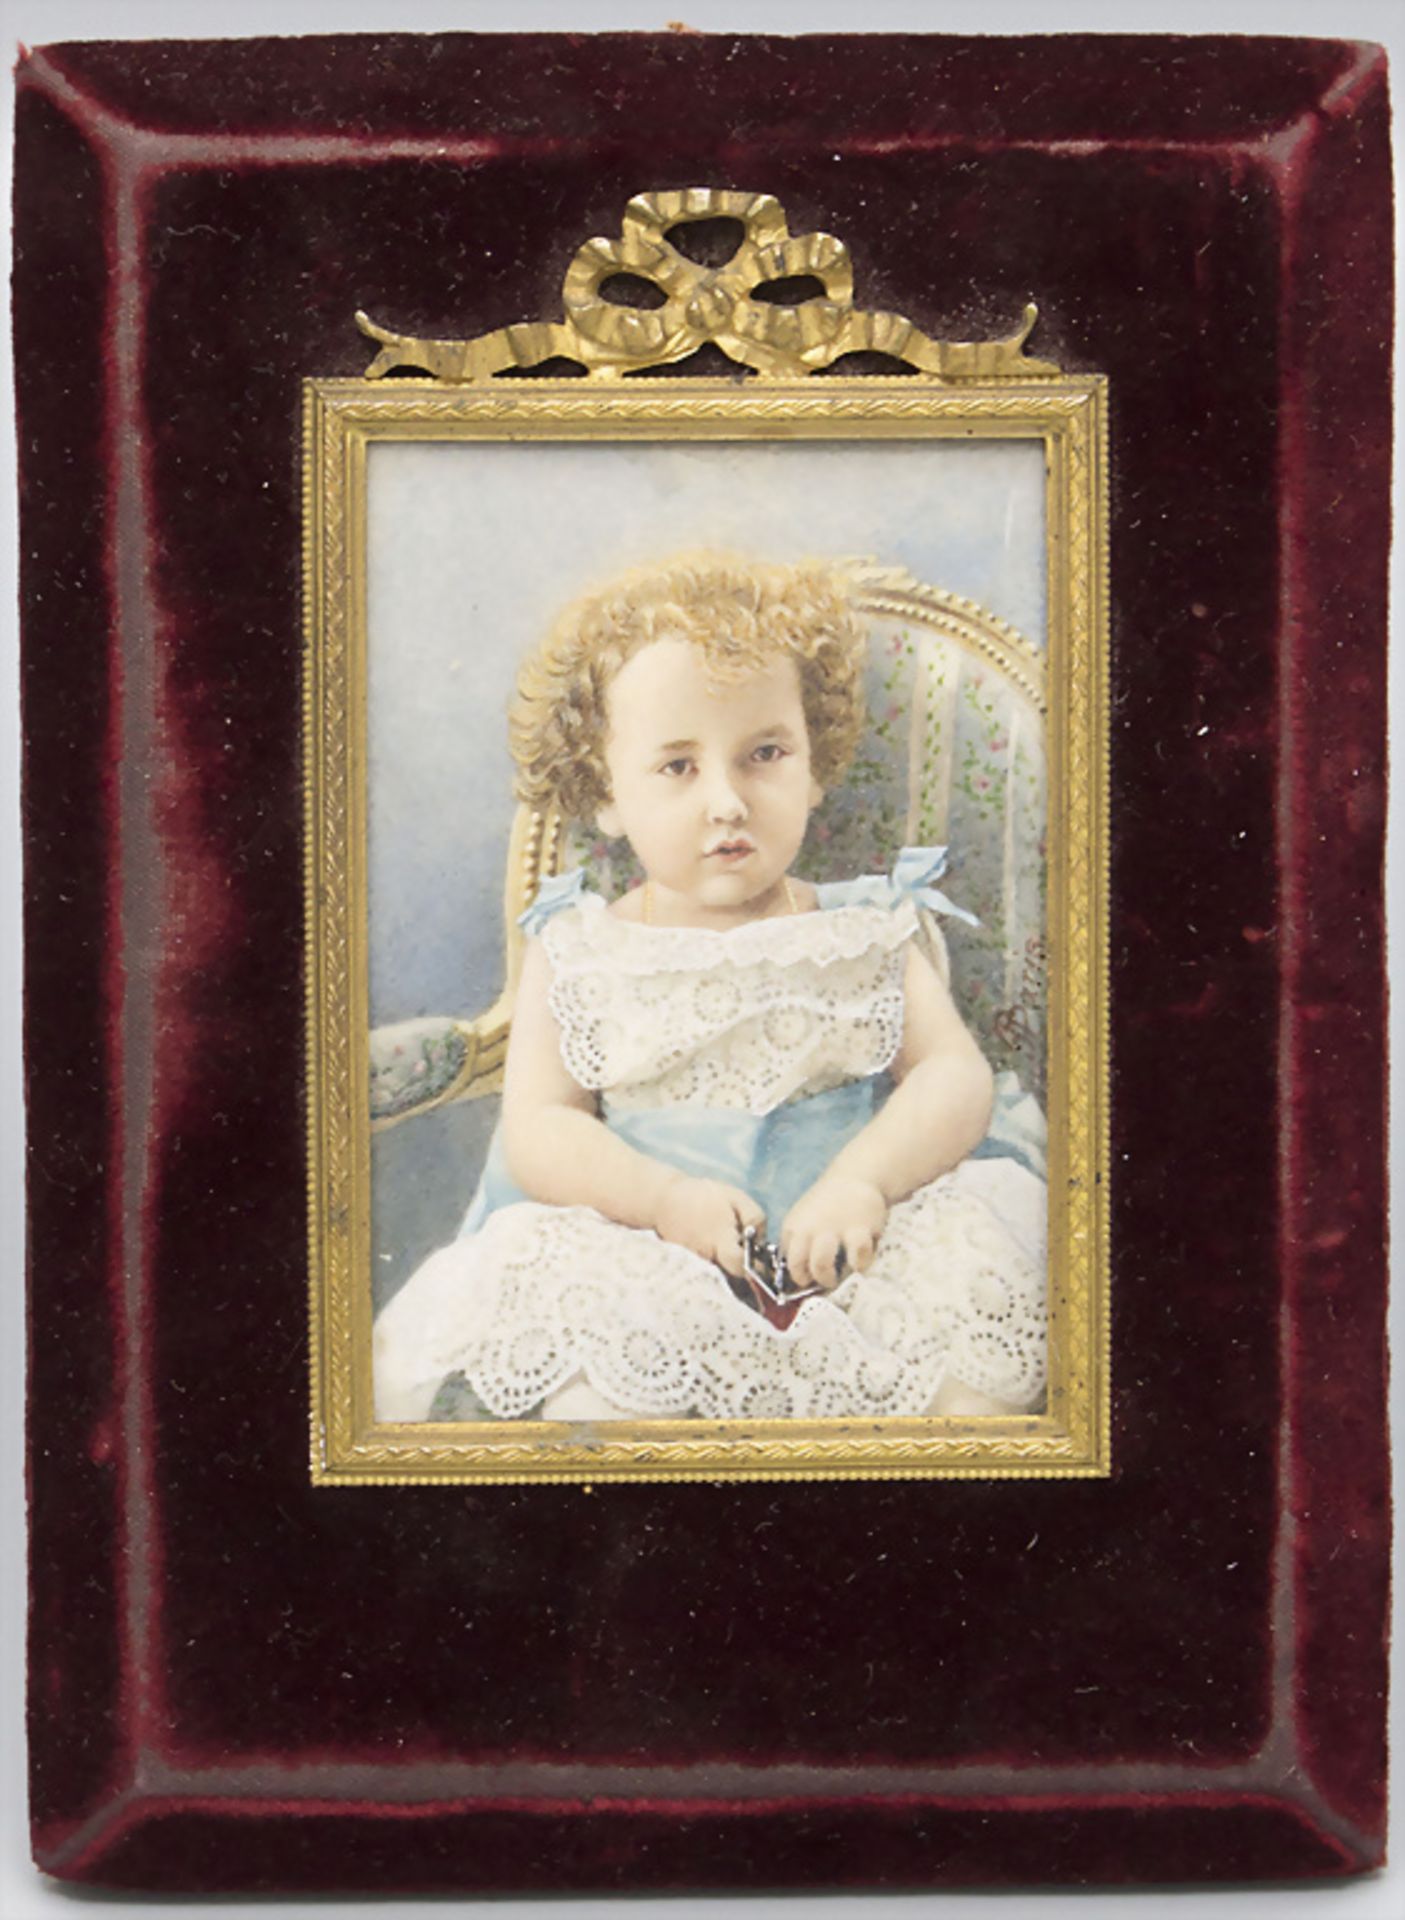 Miniatur eines kleinen Mädchens mit einer Geldbörse / A miniature portrait of a young girl ... - Bild 2 aus 3